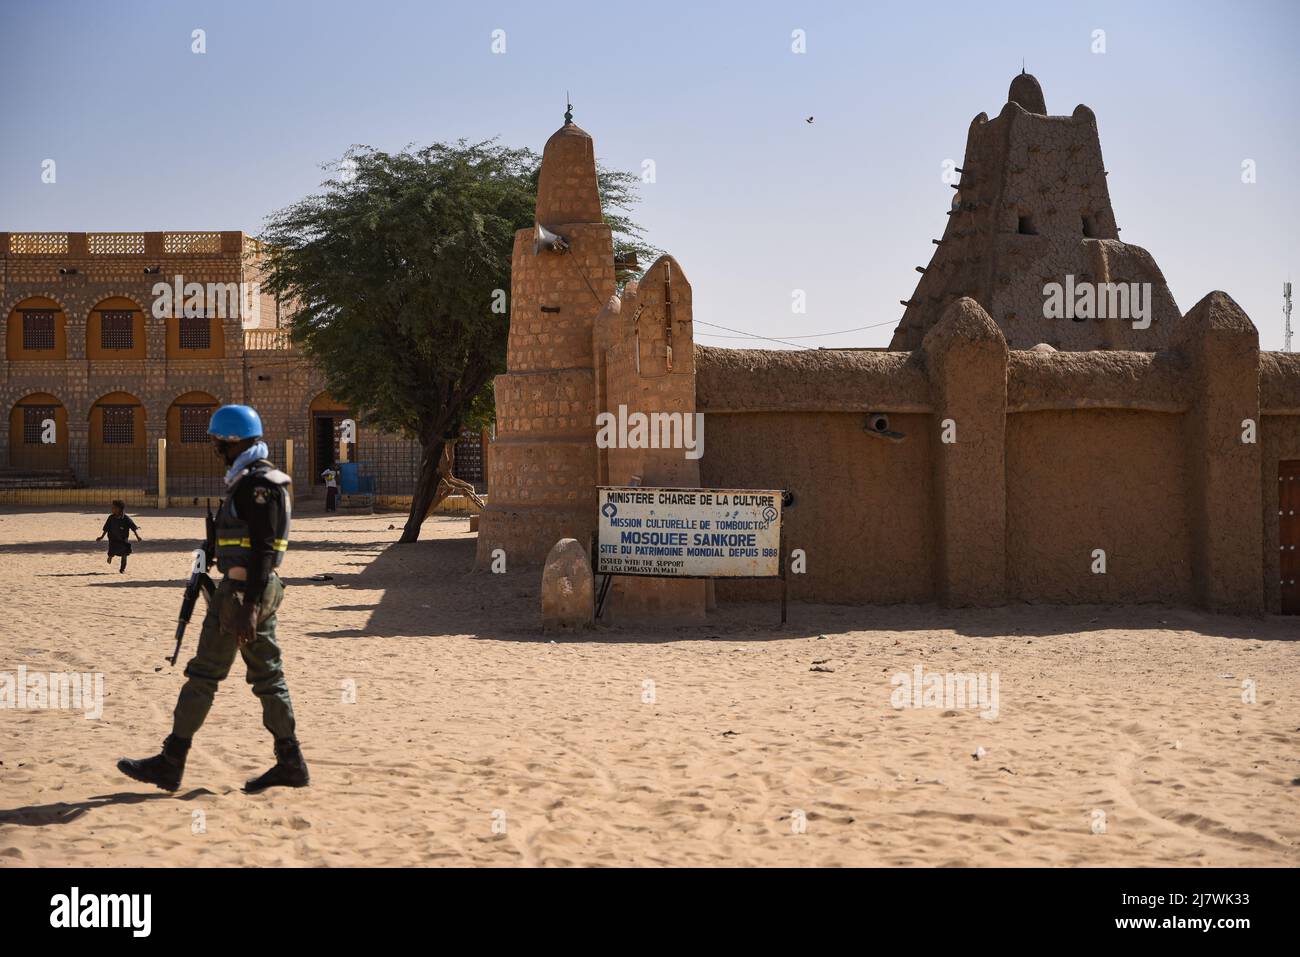 Nicolas Remene / le Pictorium - polizia delle Nazioni Unite (UNPOL) in Mali - 9/2/2022 - Mali / Tombouctou (Timbuktu) / Tombouctou (Timbuktu) - membro Foto Stock